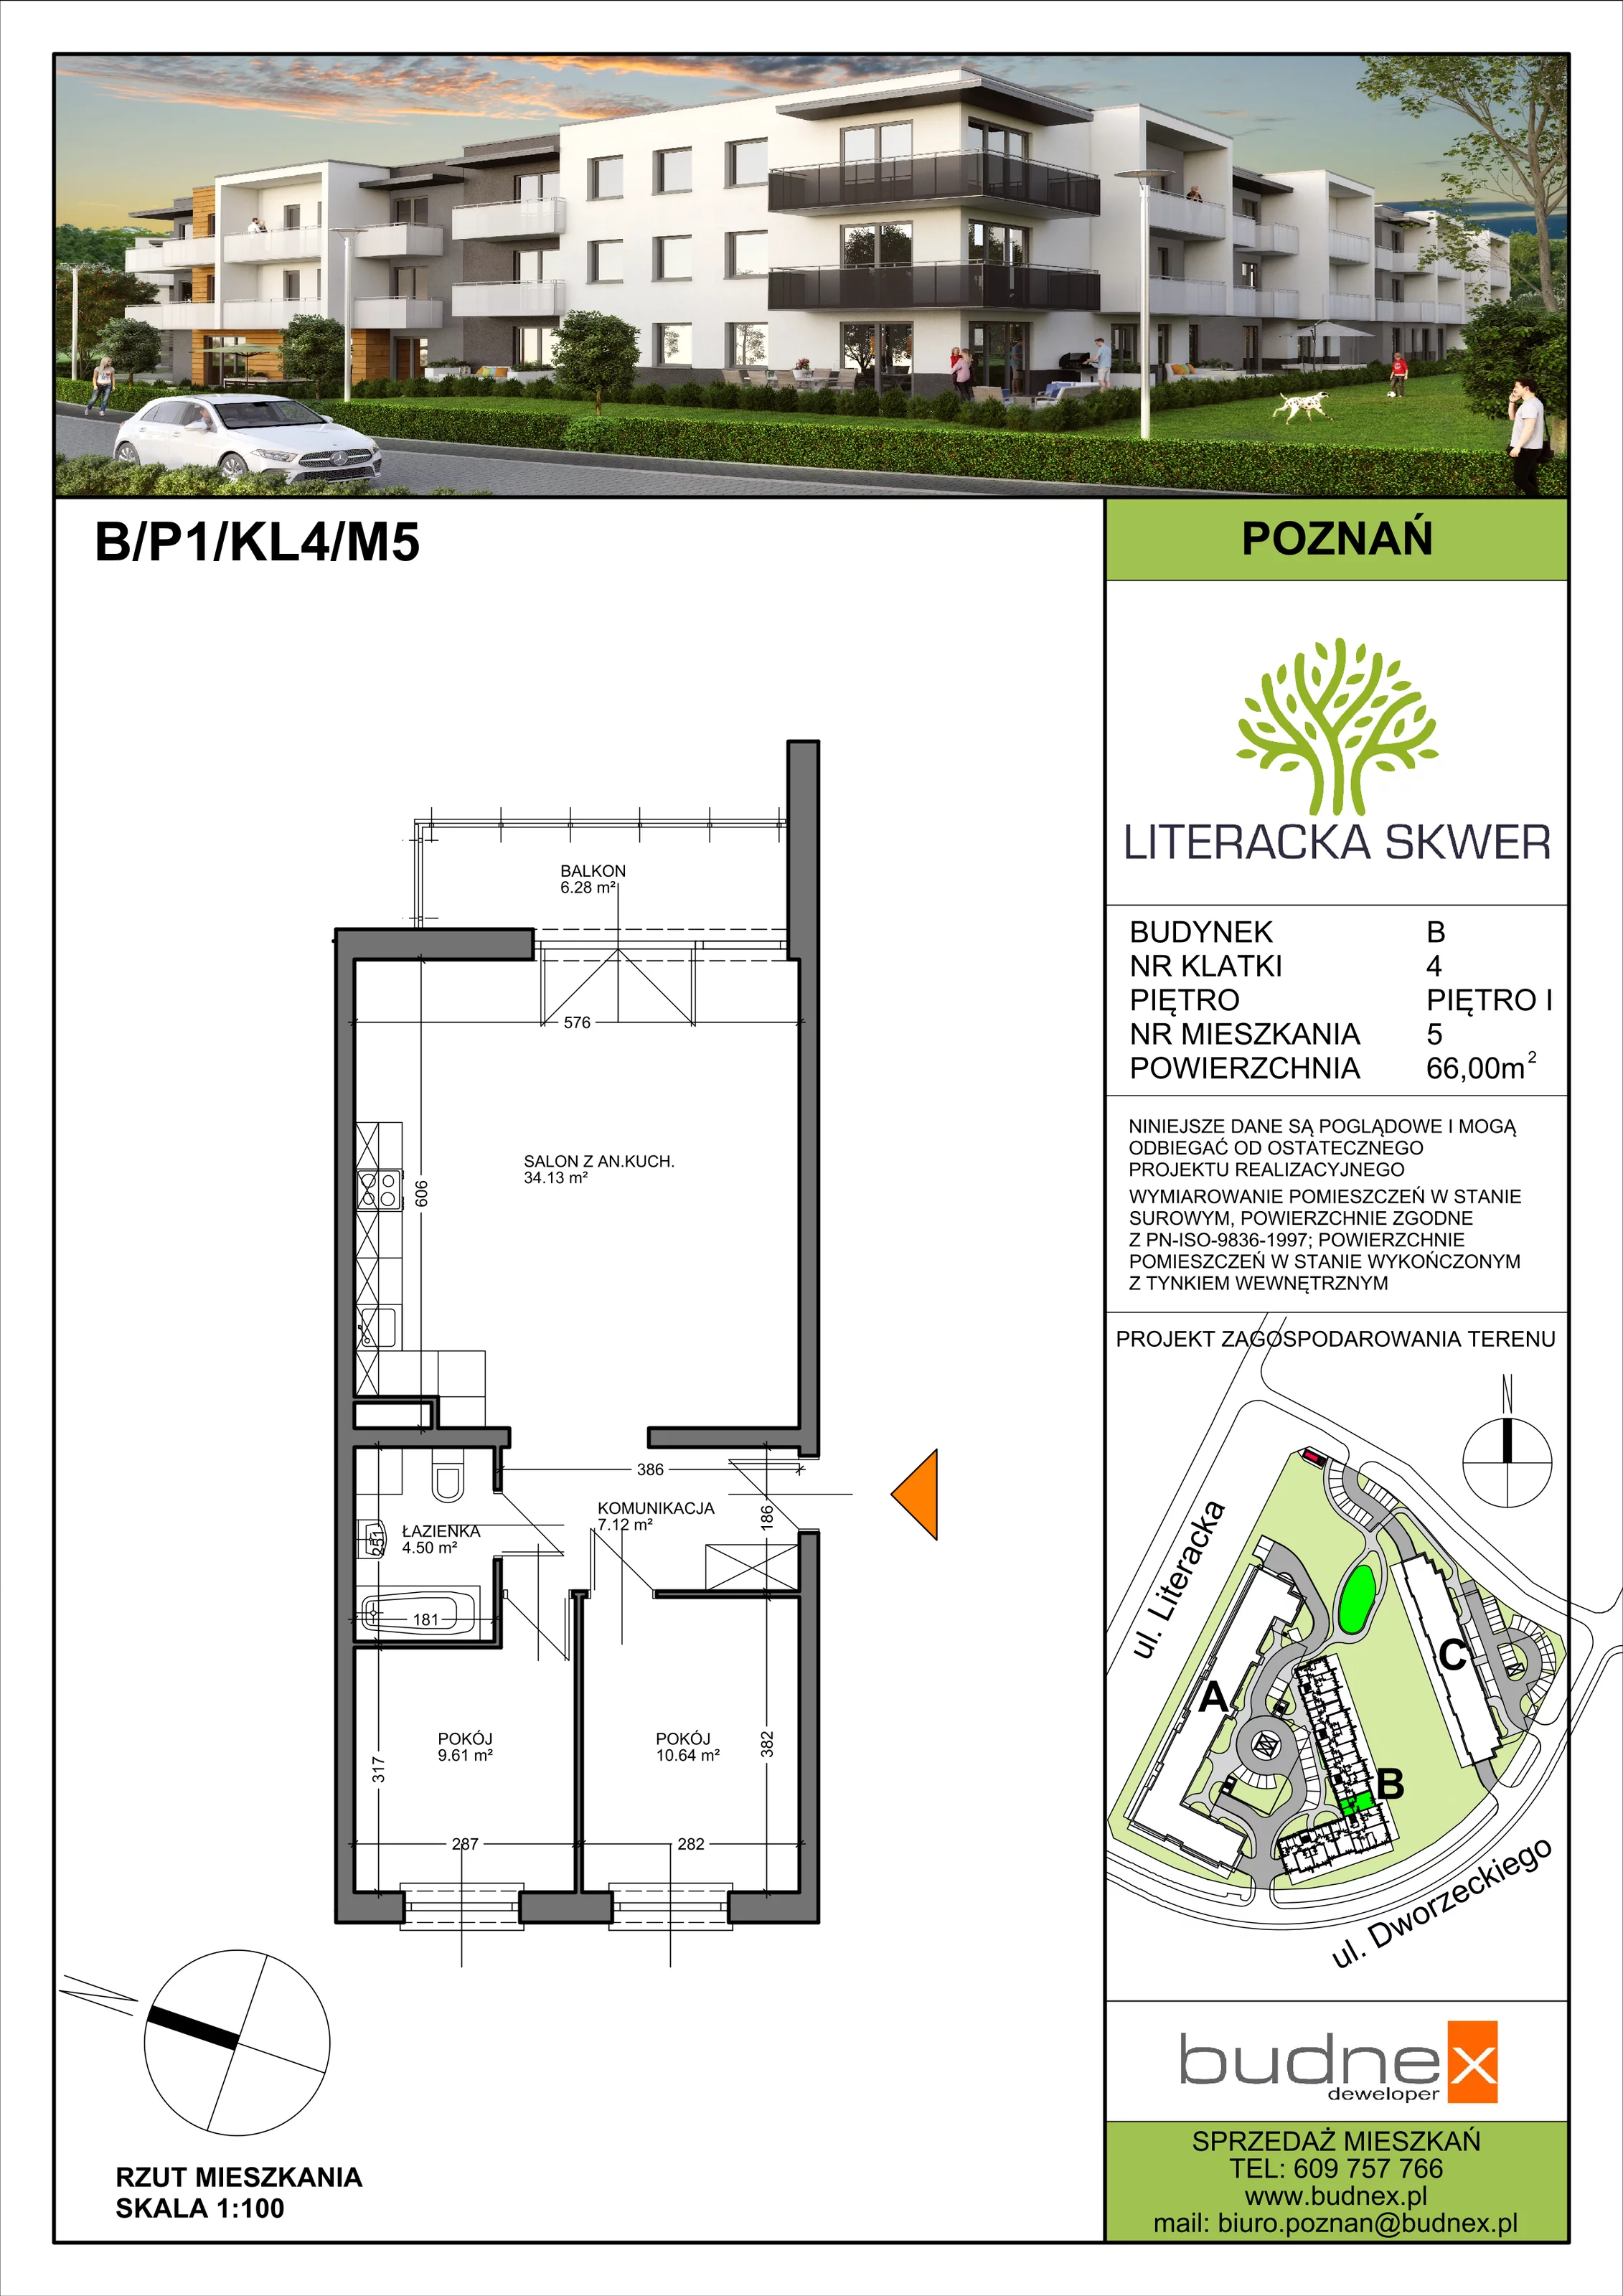 Mieszkanie 66,00 m², piętro 1, oferta nr 4/M5, Literacka Skwer - Etap B, Poznań, Strzeszyn, Strzeszyn, ul. Literacka